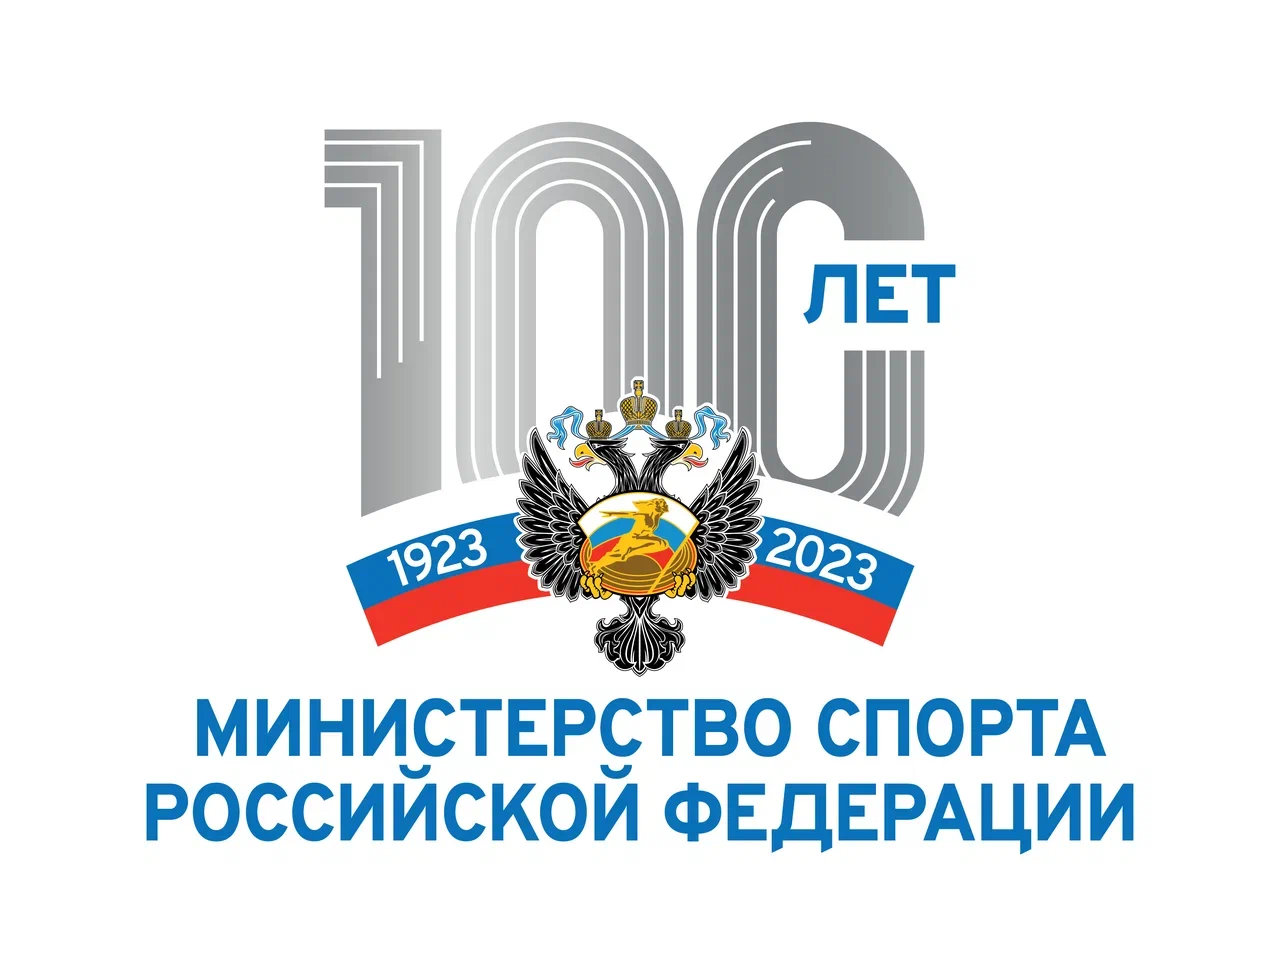 Министерство спорта России отметит вековой юбилей на форуме «Мы вместе. Спорт»